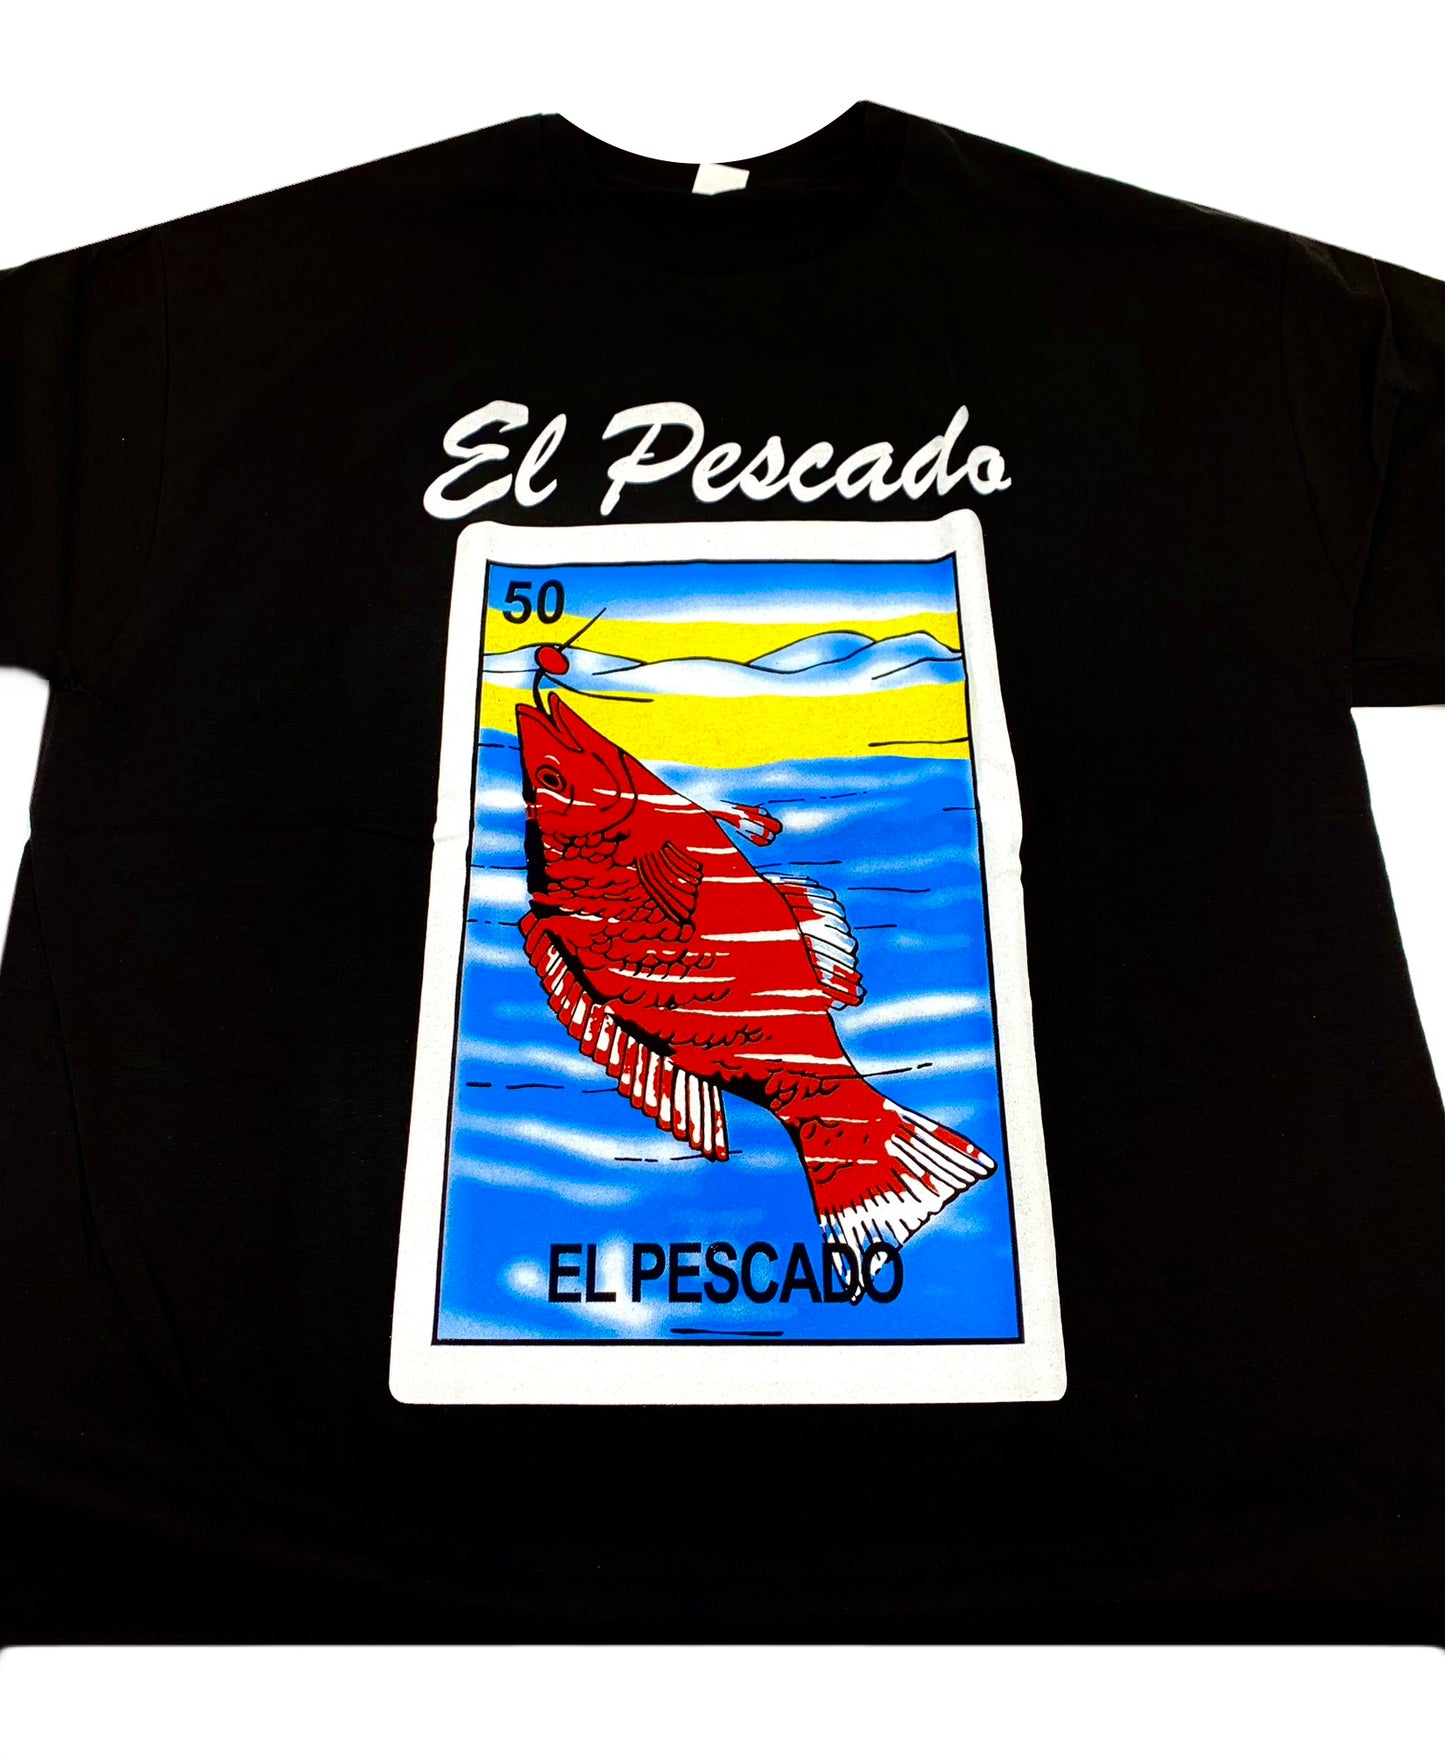 (12ct) Camisetas de El Pescado $6.99 c/u